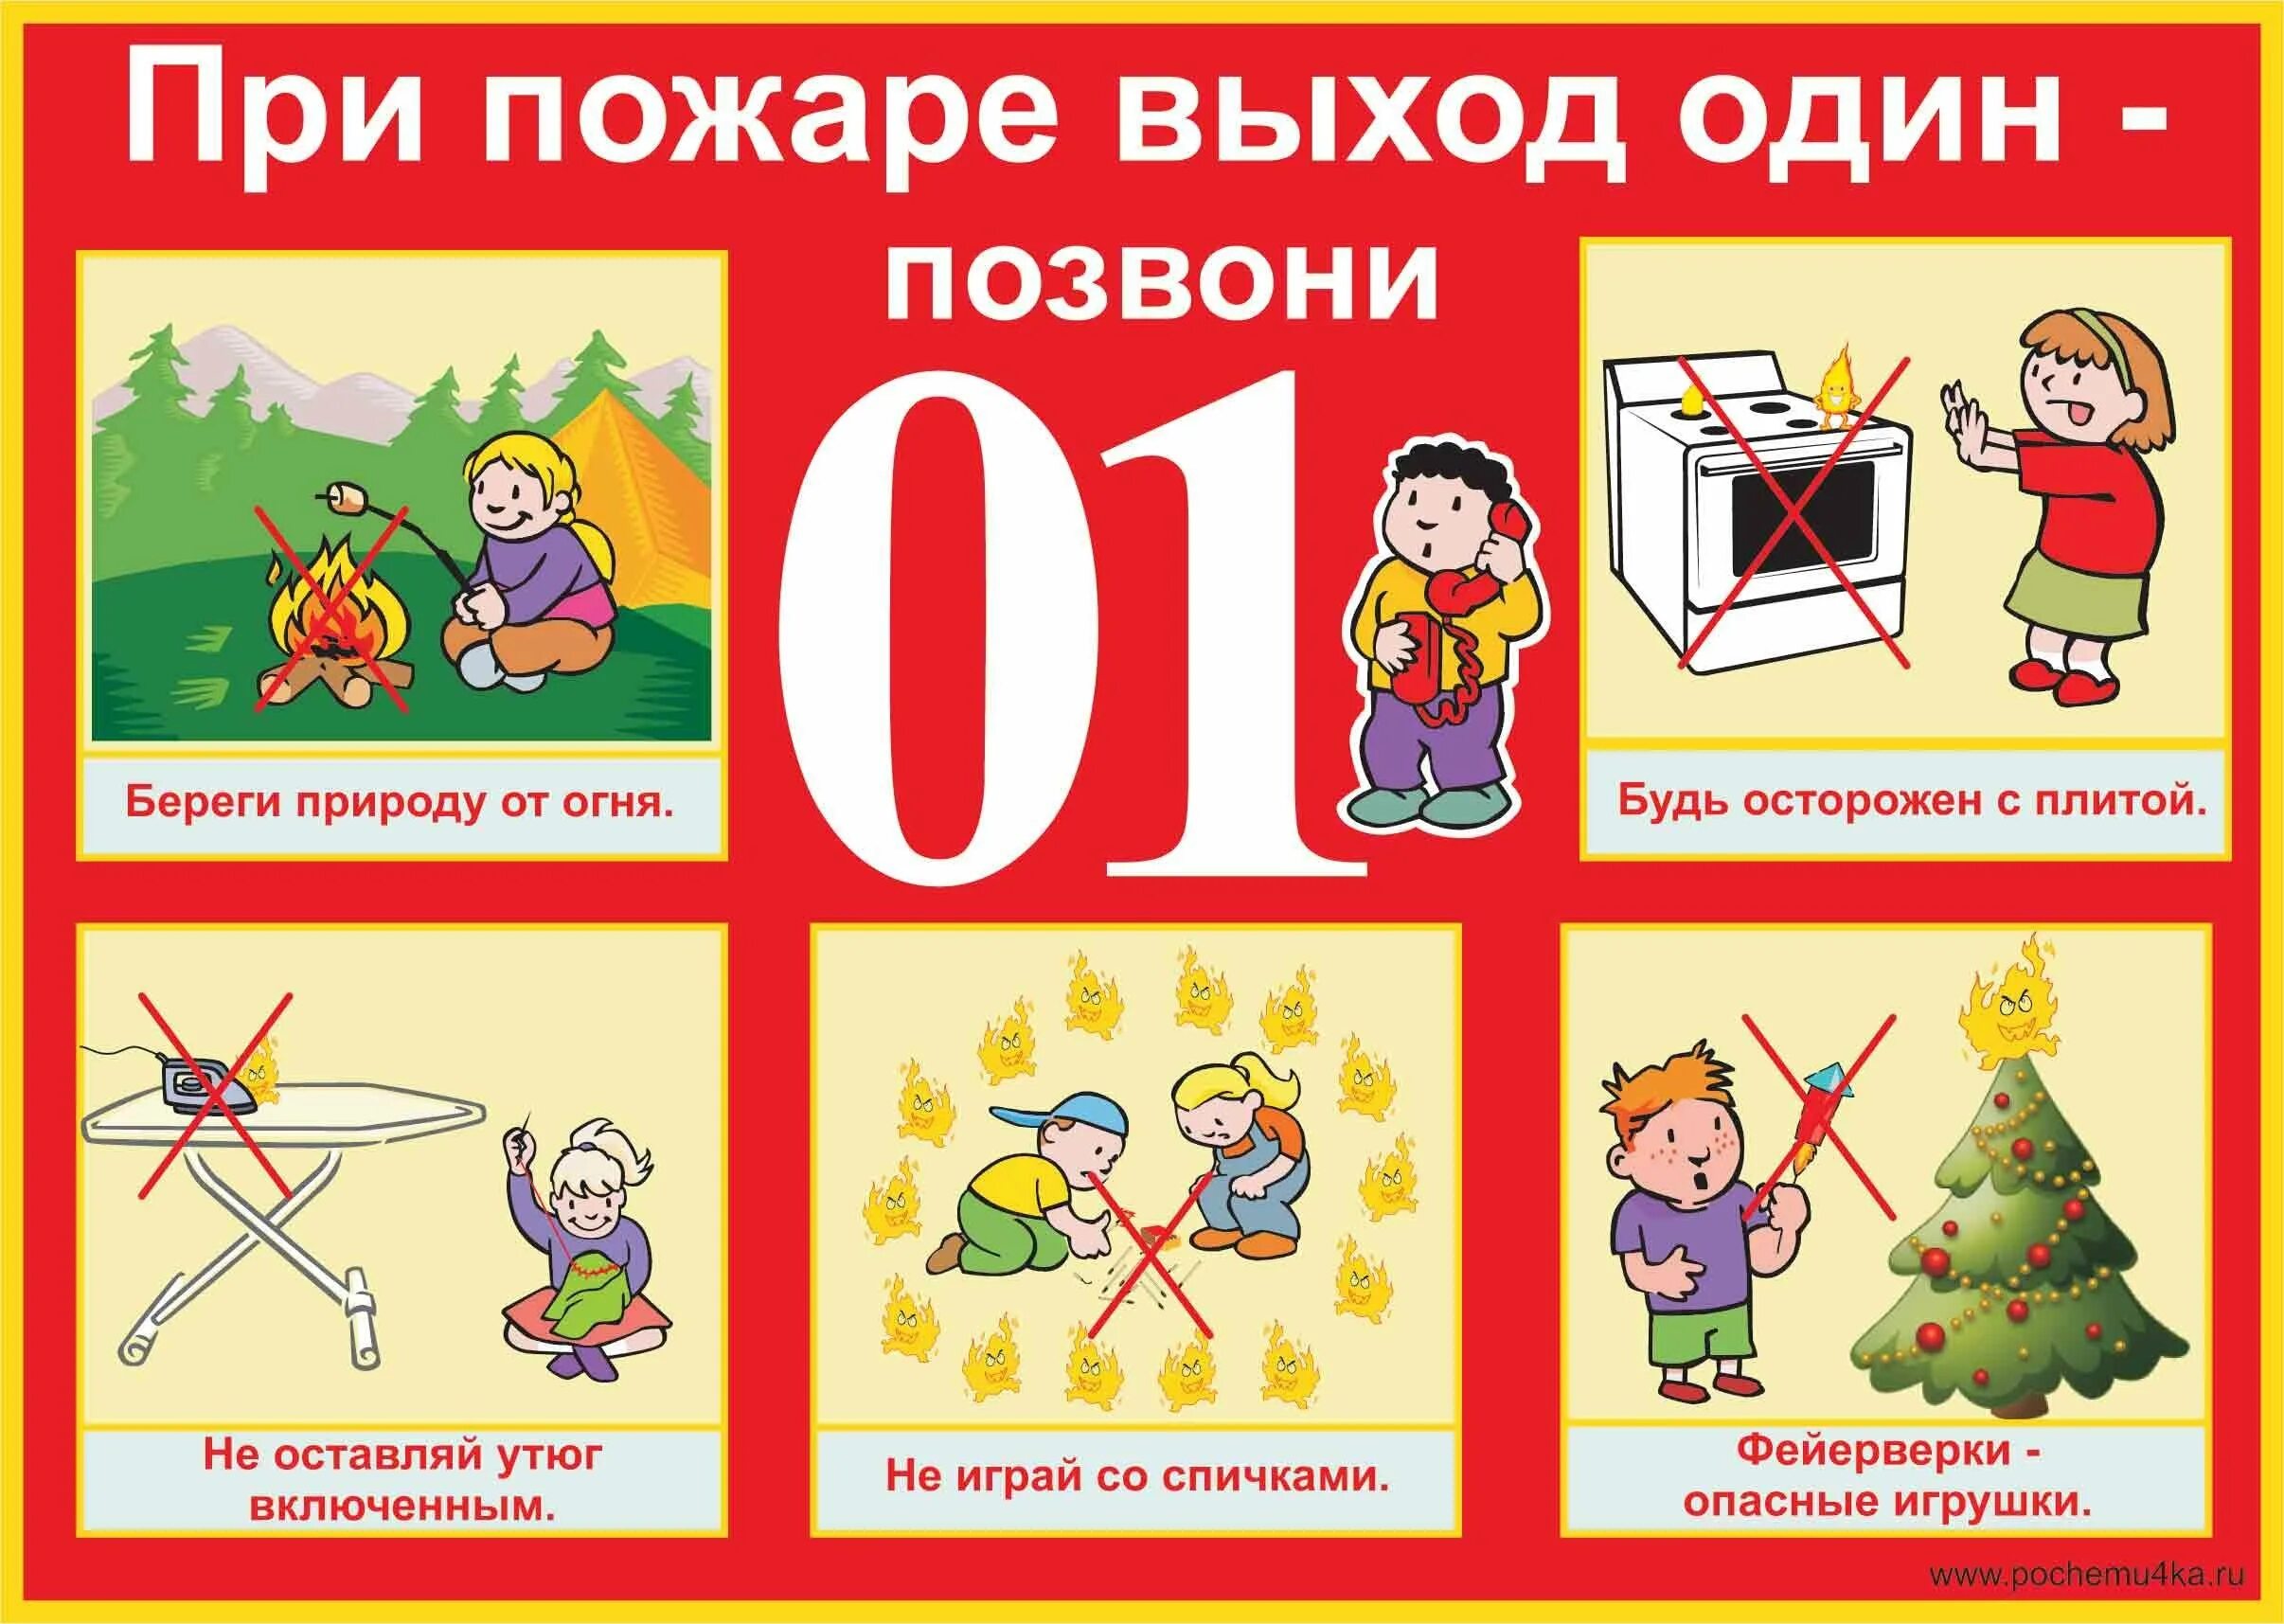 Пожарная безопасность для детей. Правила пожарной безопасности для детей. Плакат пожарная безопасность для детей. Тема недели пожарная безопасность